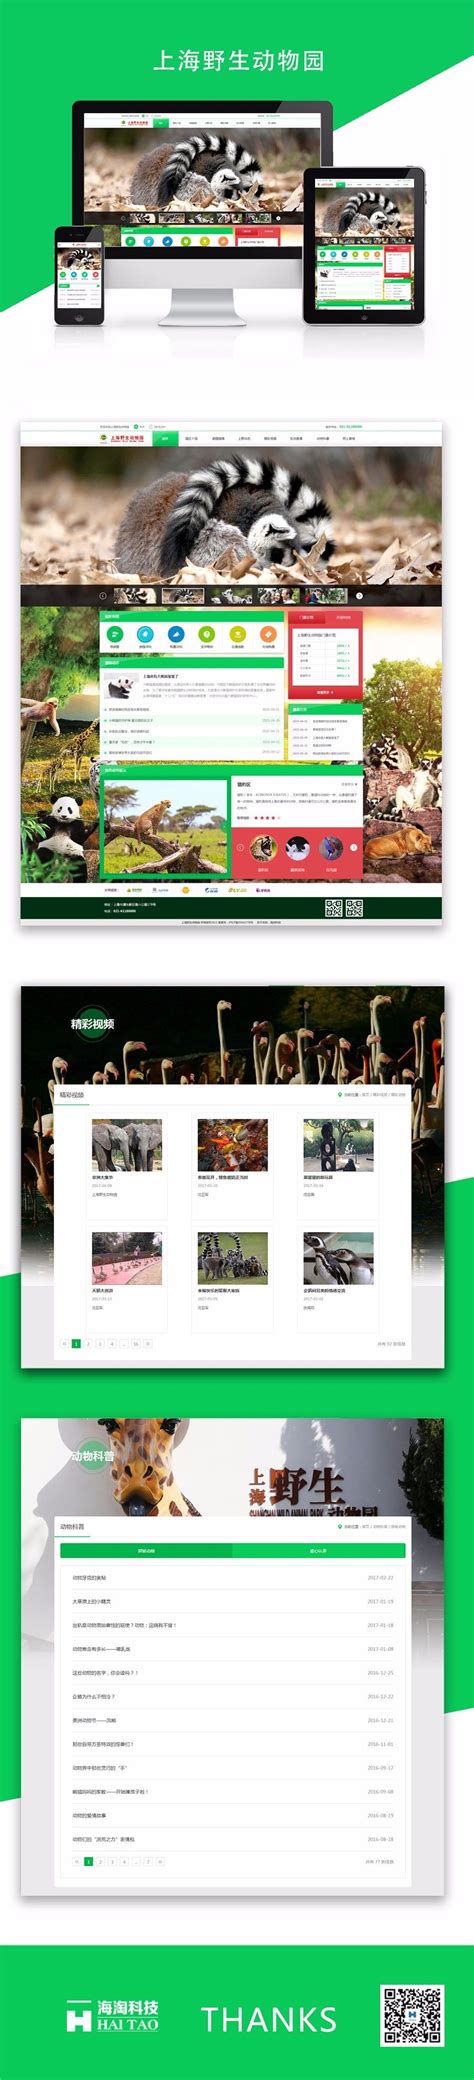 上海野生动物园网站建设案例_旅游网站建设案例-海淘科技